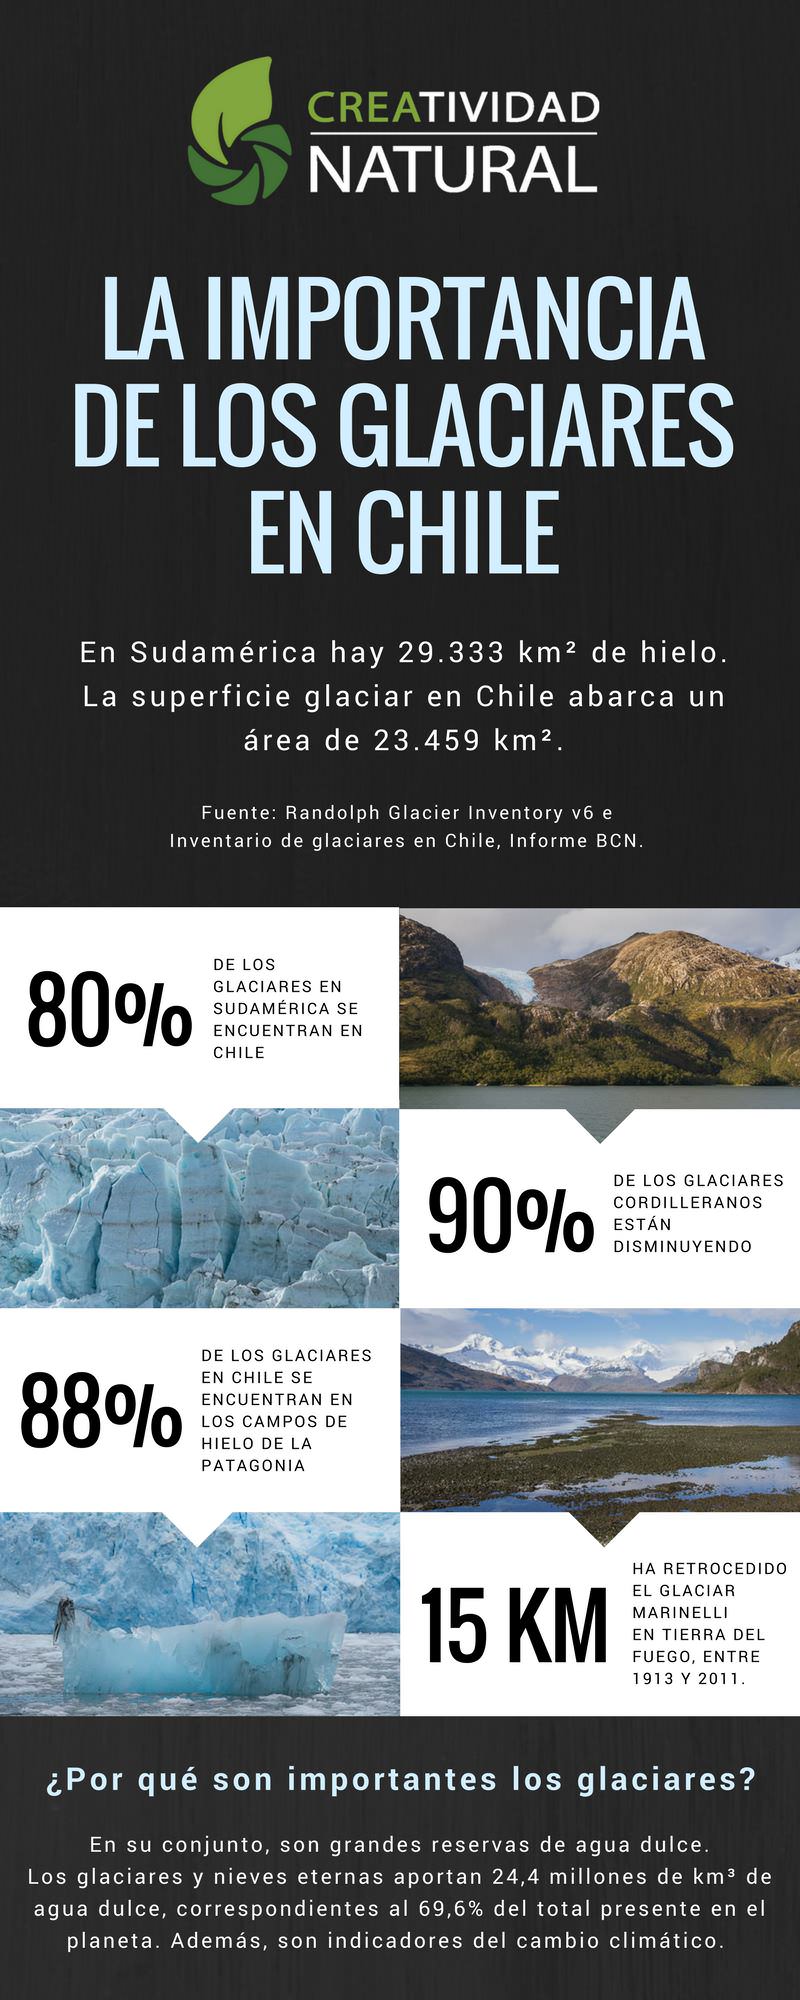 Glaciares en Patagoniay su importancia en Chile